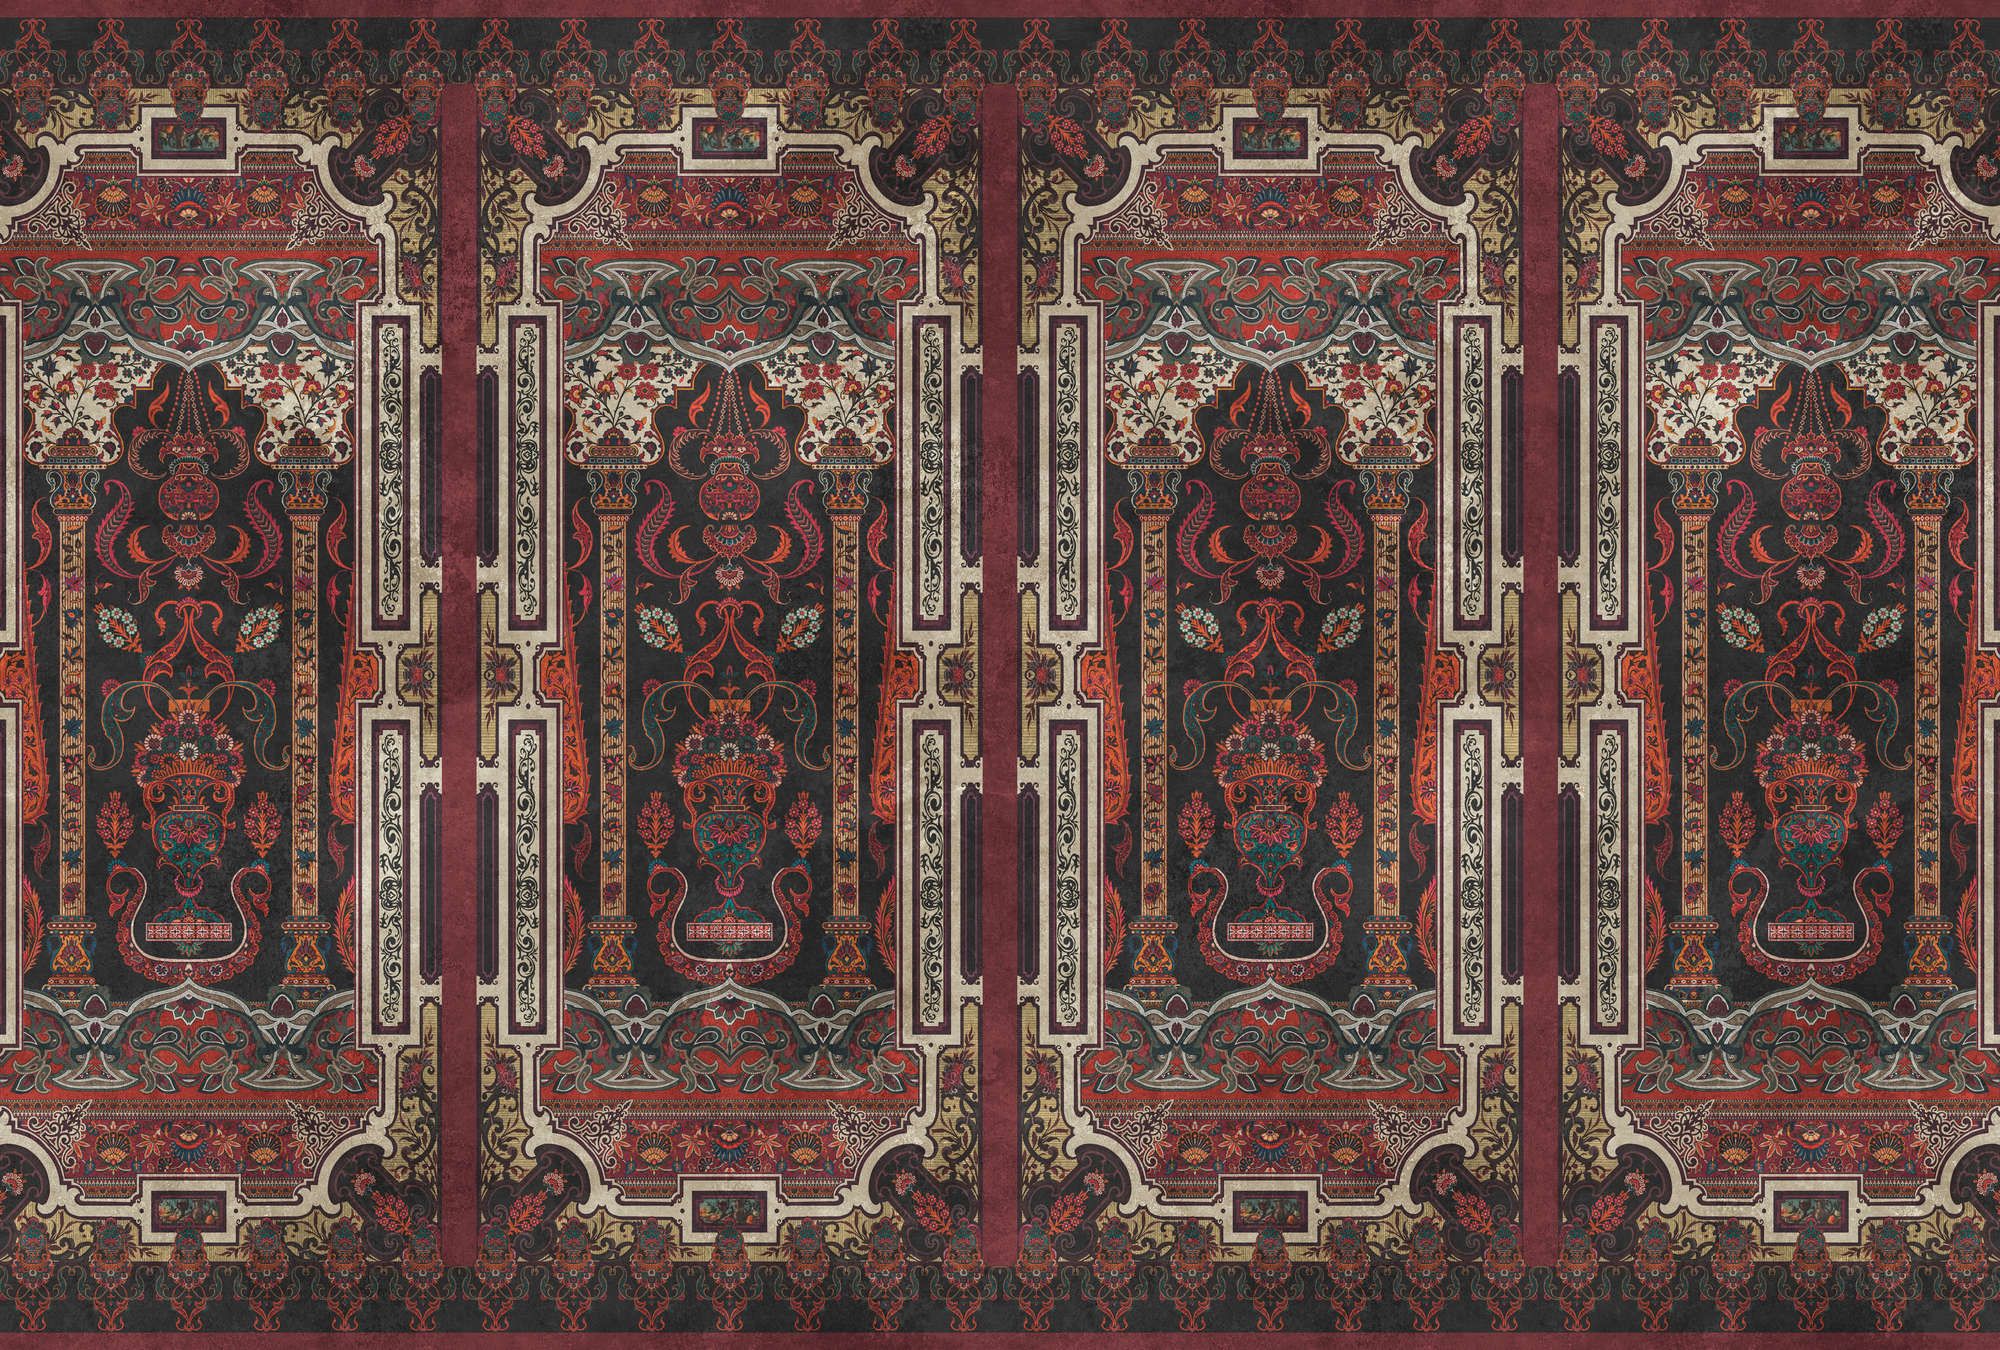             Fotomural »karim« - Revestimiento ornamental con textura de yeso vintage - Rojo oscuro | mate, no tejido liso
        